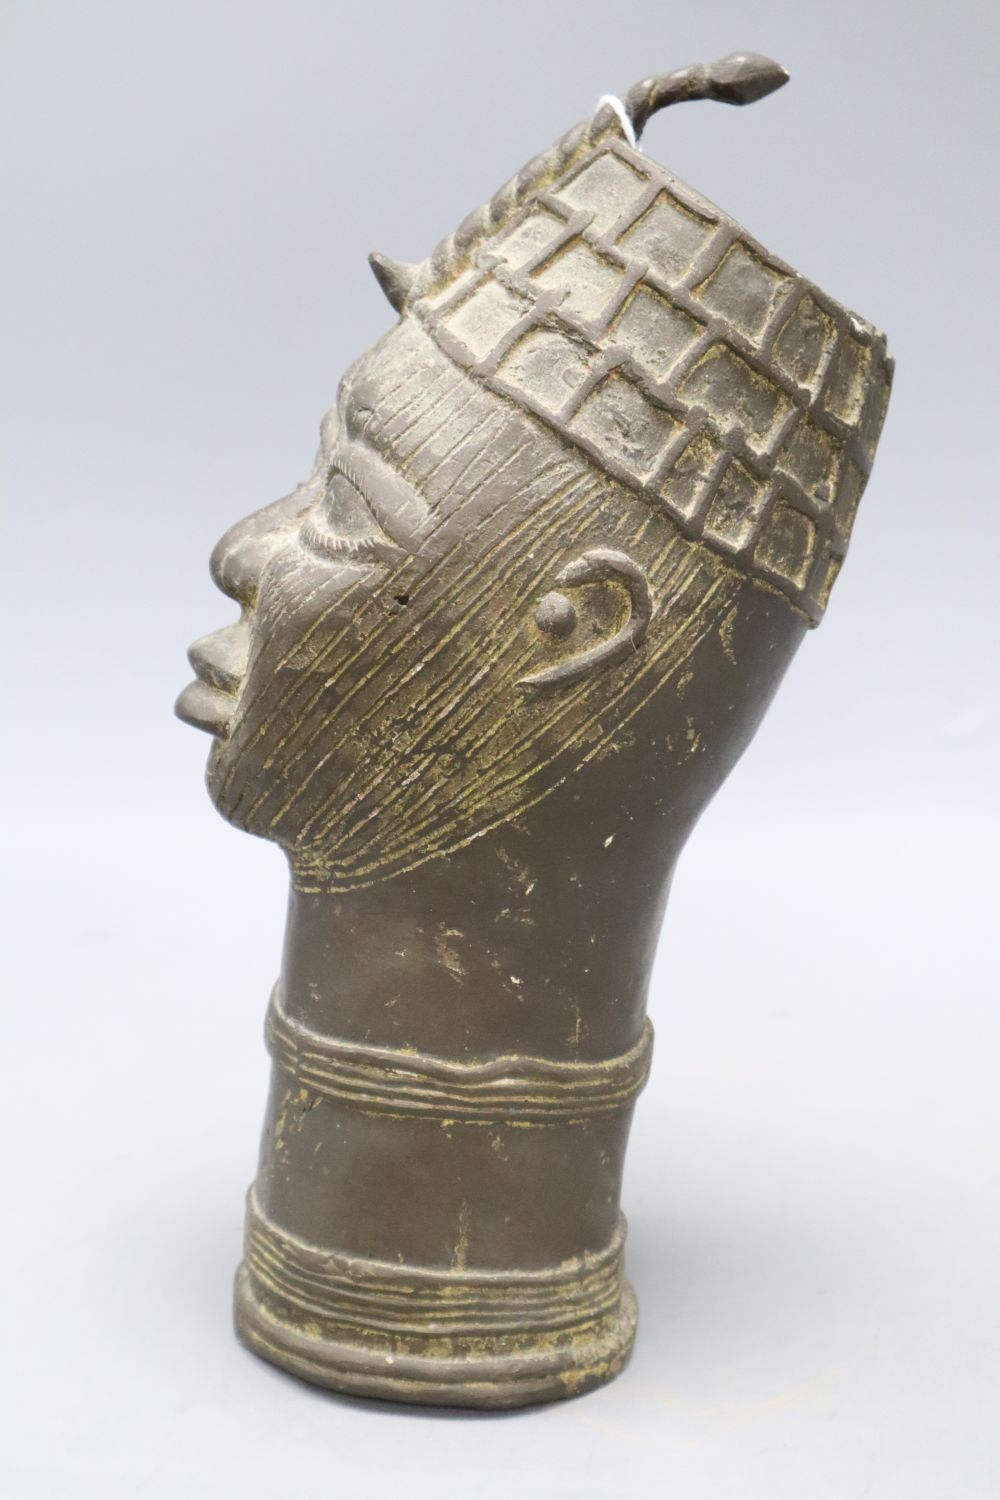 A Benin style bronze bust, height 27cm